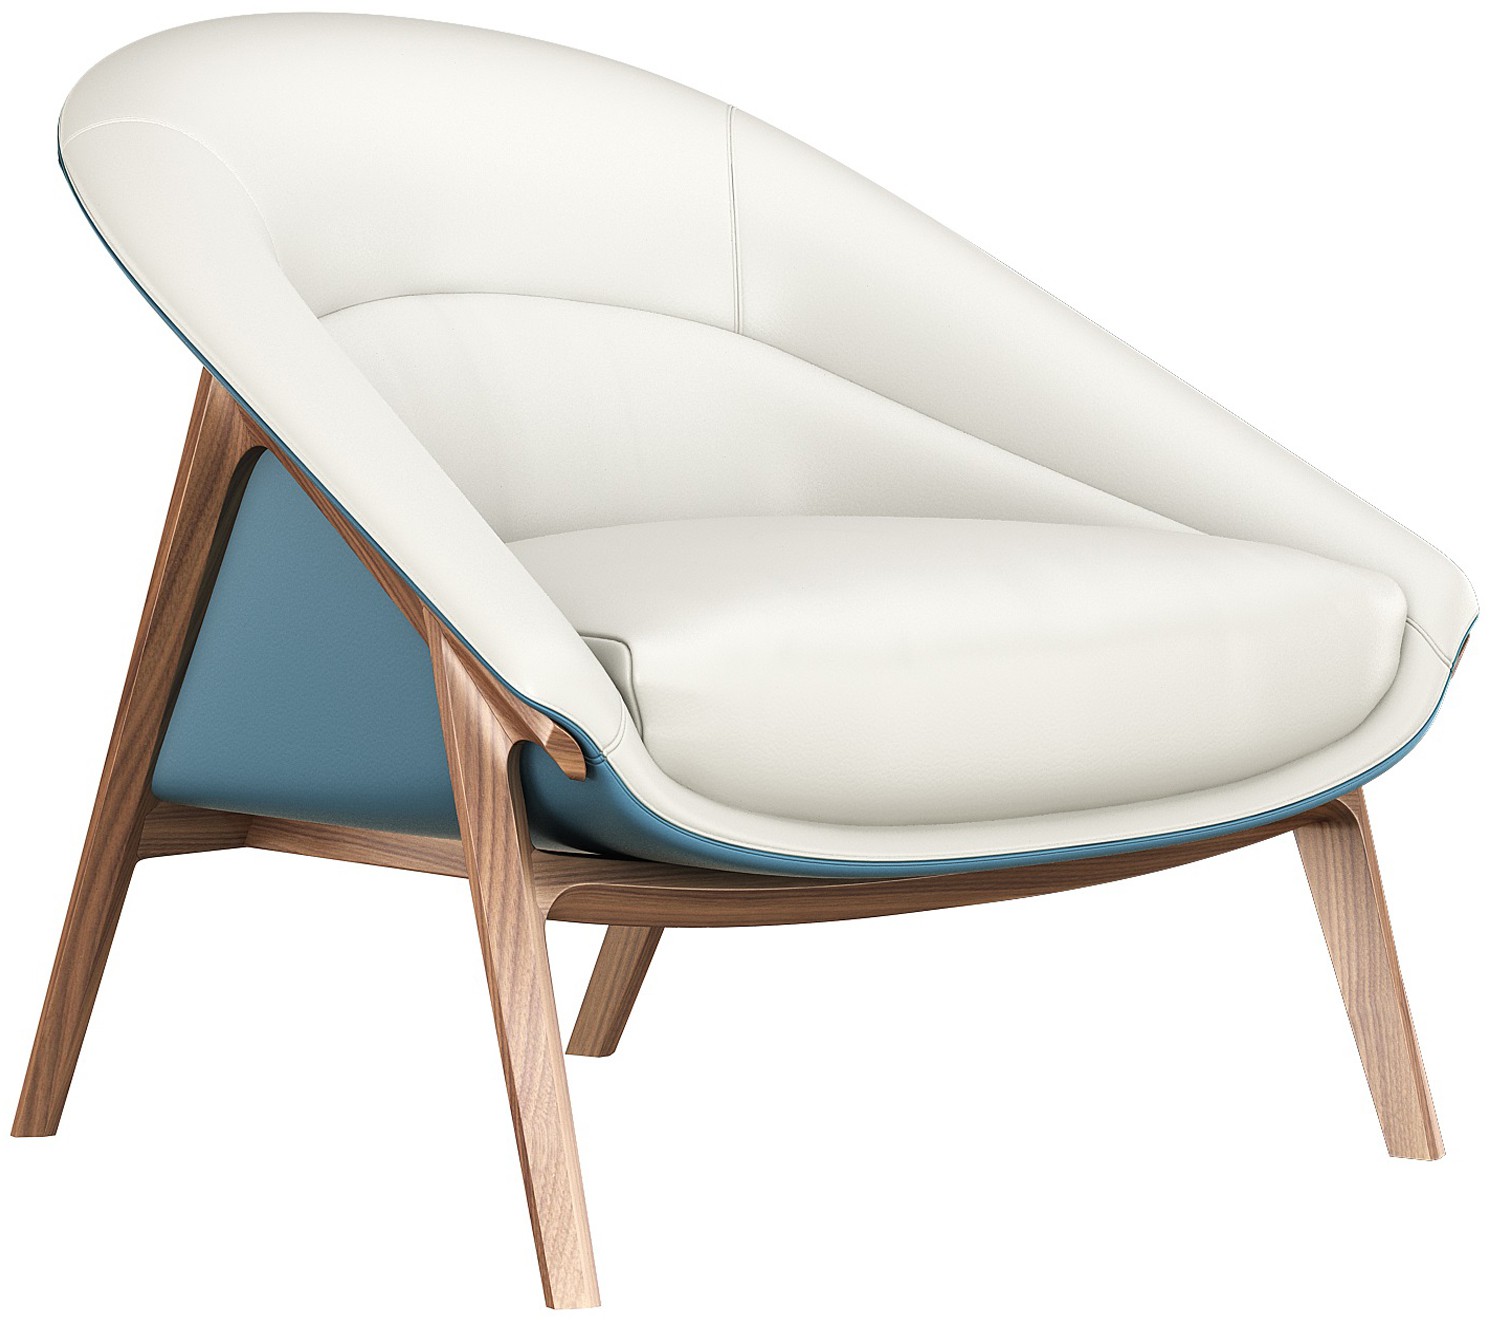 本外观设计产品的名称:休闲椅(706)2本外观设计产品的用途:家具3